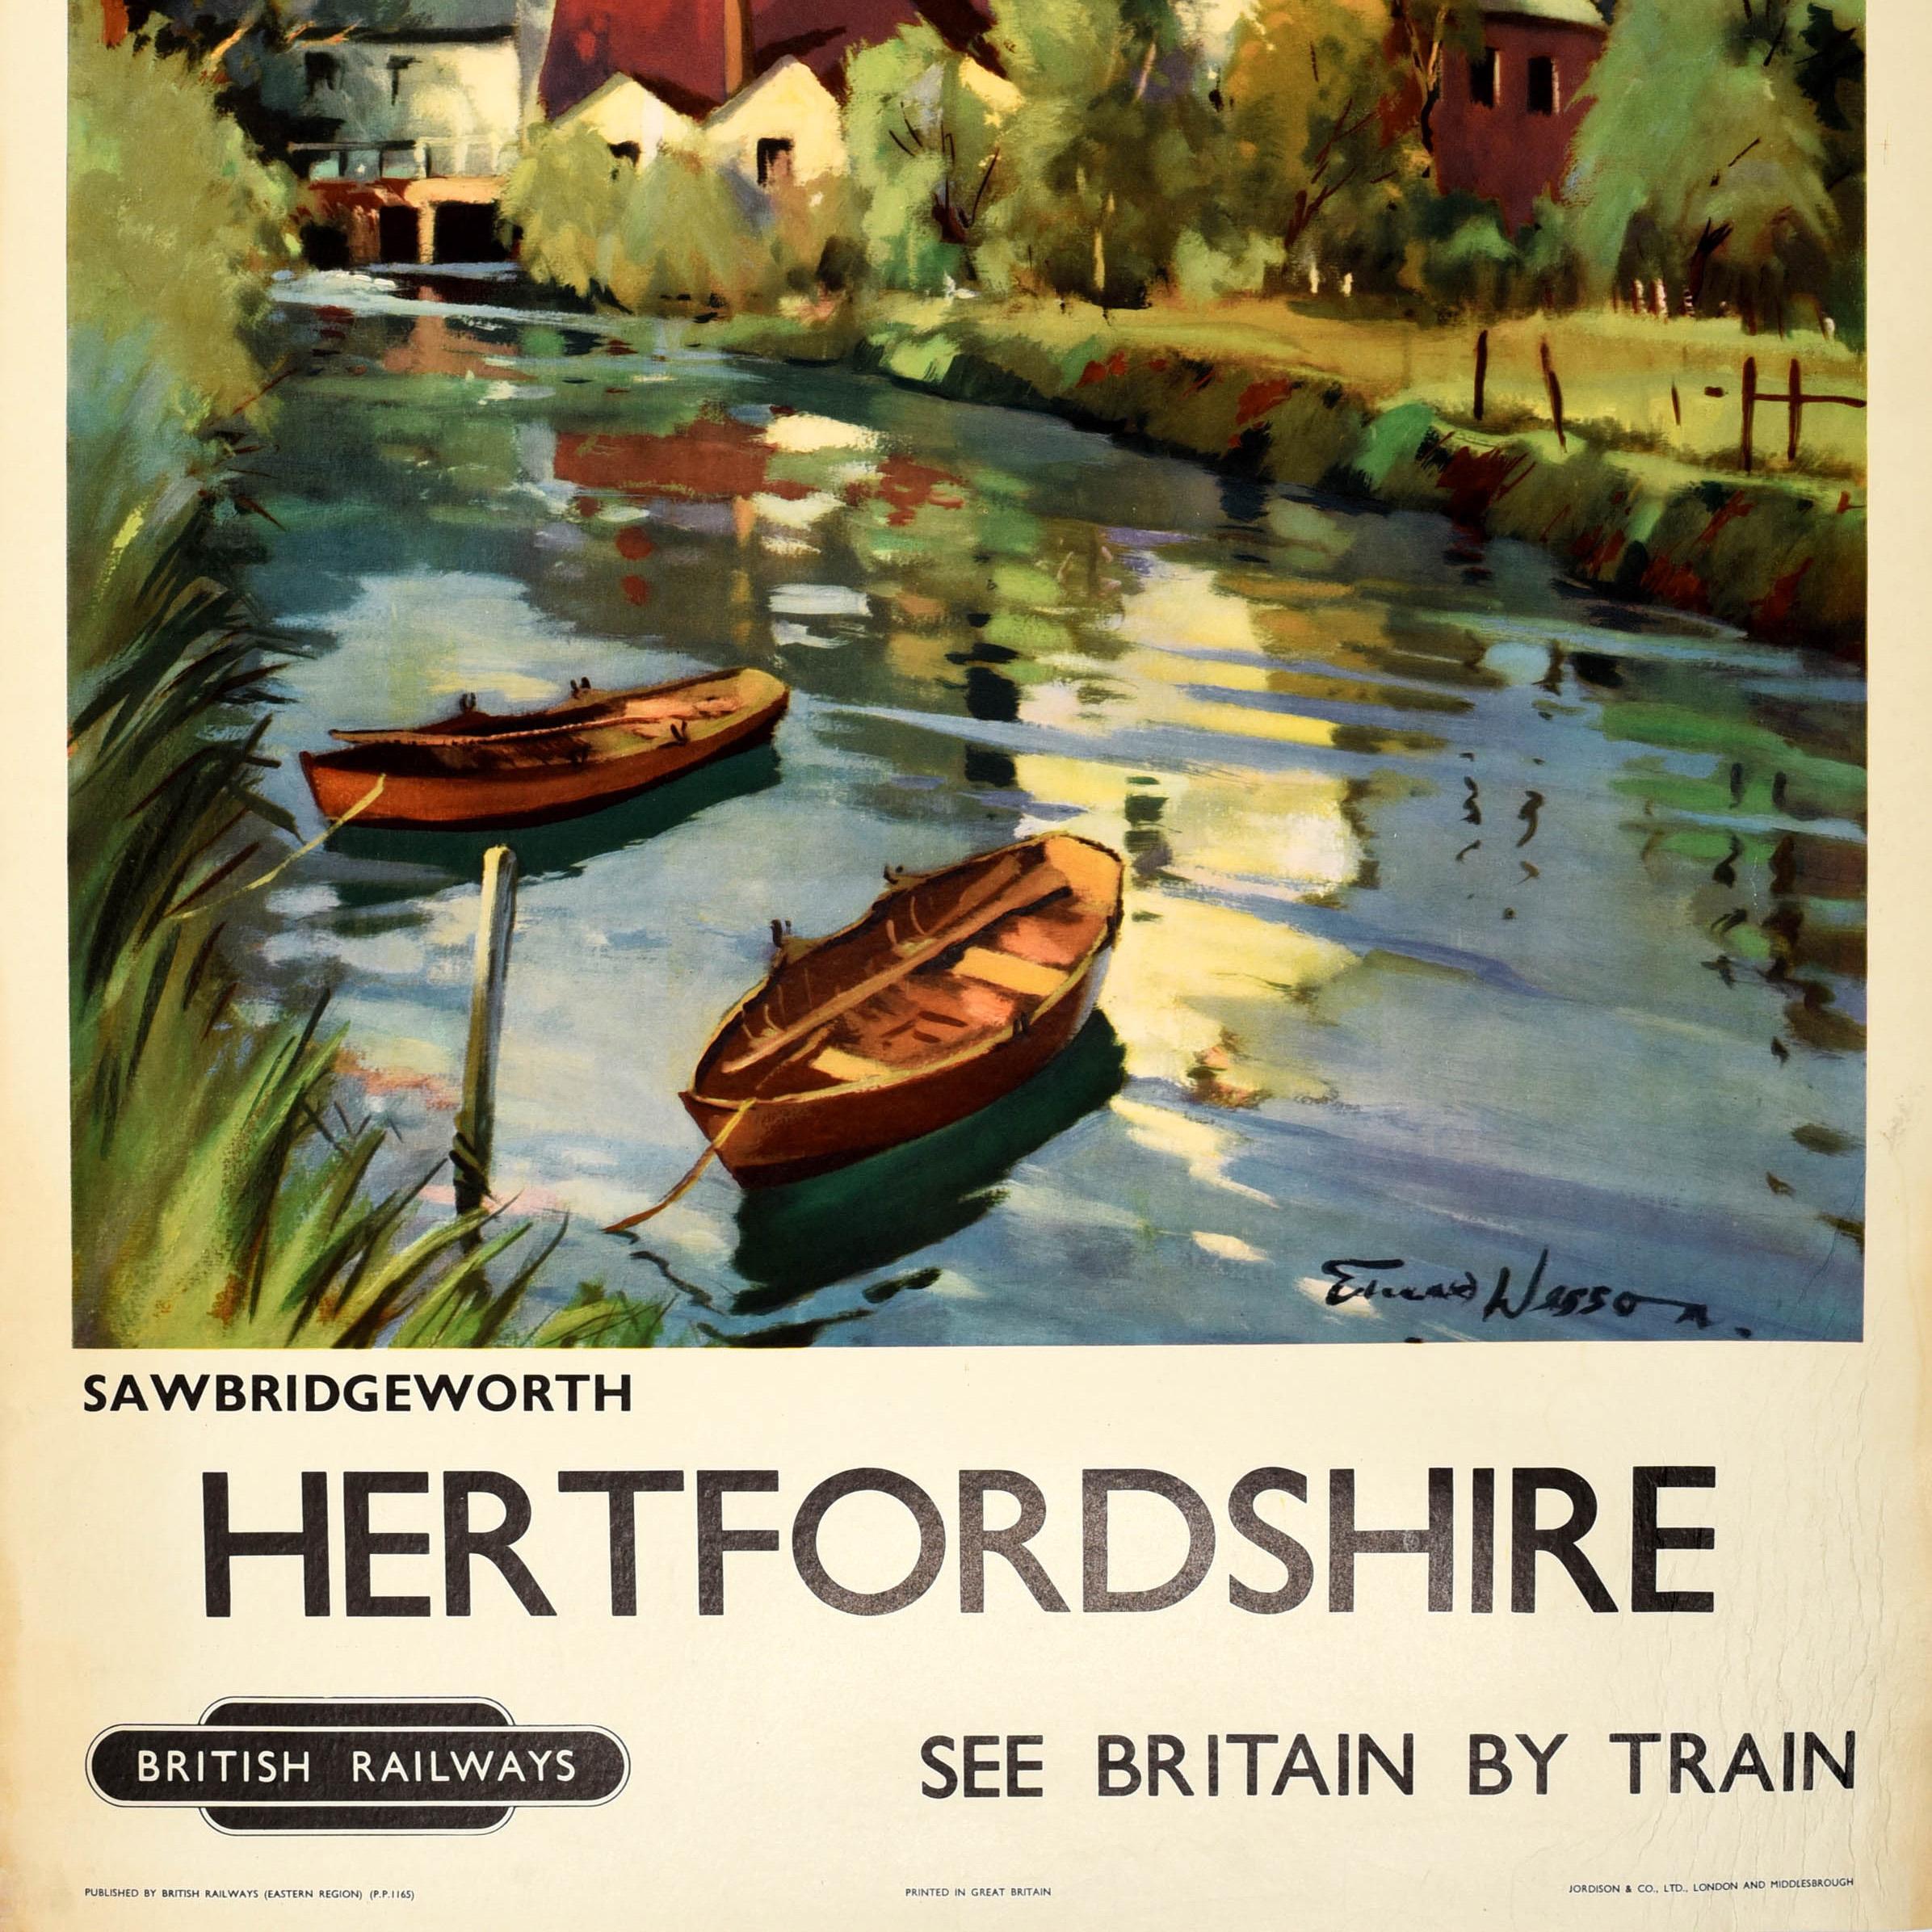 Originales Vintage-Reiseplakat für Hertfordshire See Britain by Train mit einem landschaftlichen Kunstwerk des Landschaftsaquarellmalers Edward Wesson (1910-1983), das den Fluss Stort in der historischen Stadt Sawbridgeworth mit Ruderbooten auf dem